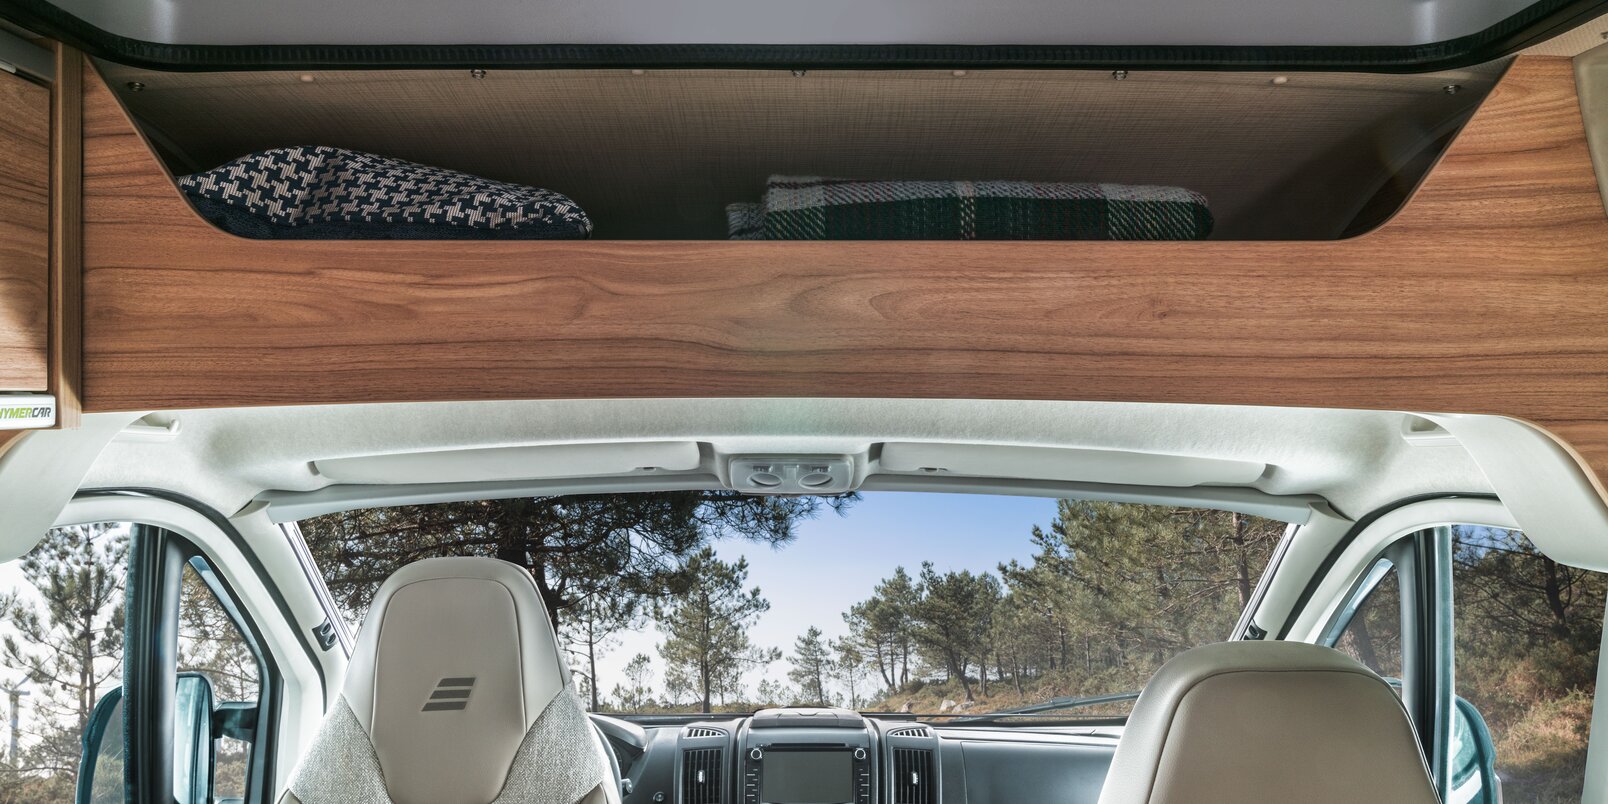 Ruime opbergruimte boven de bestuurderscabine met dekens, bestuurdersstoelen en dashboard in de HYMER Fiat-camper